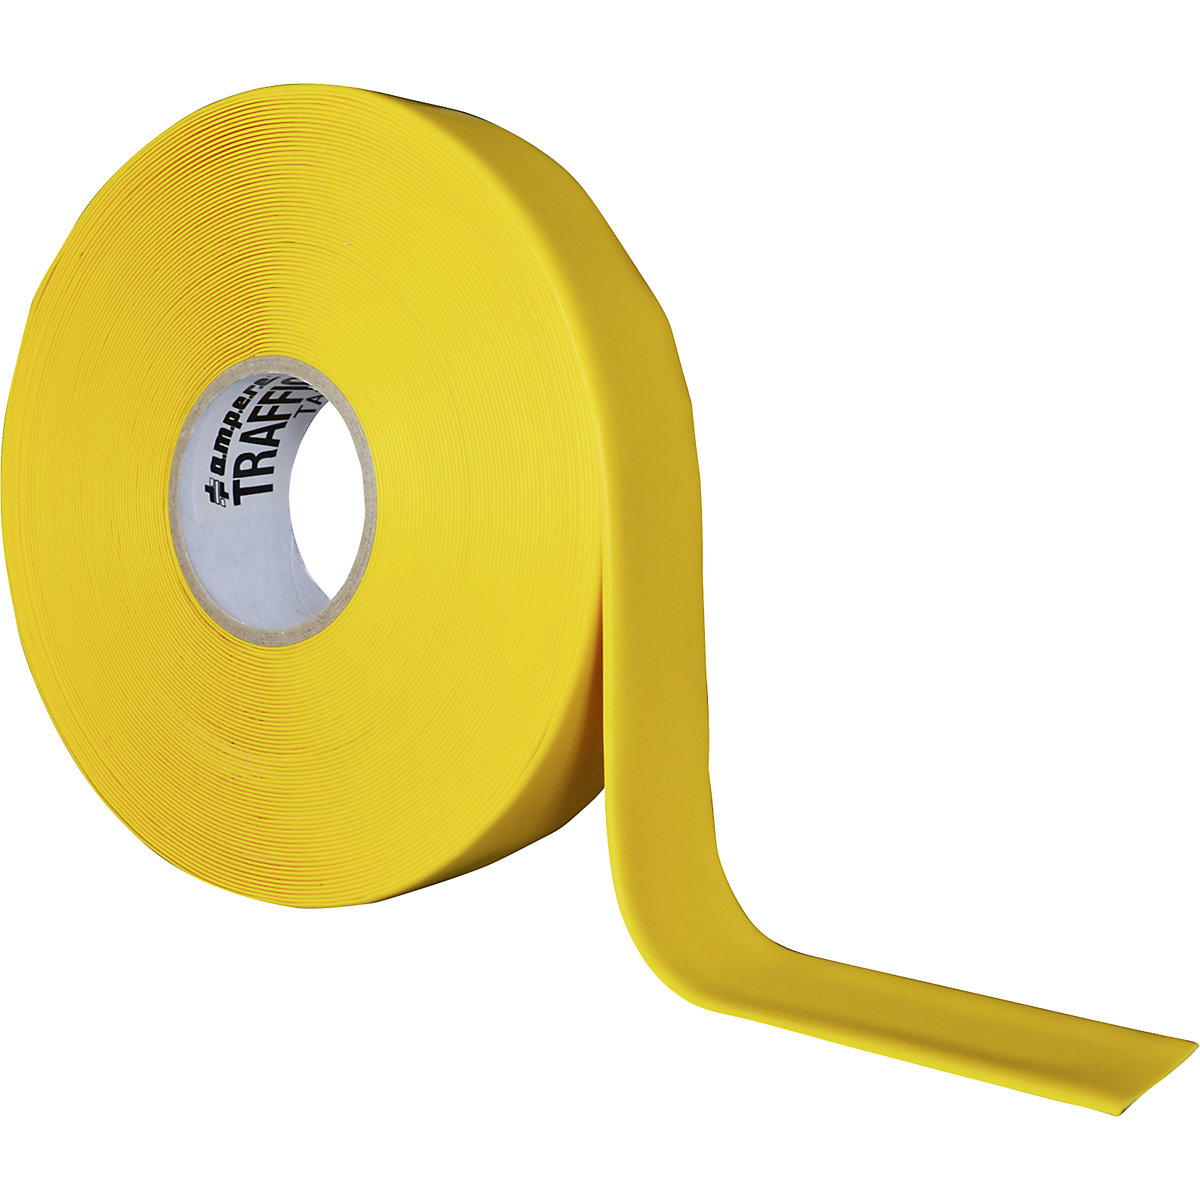 Cinta para marcar suelos, extra-fuerte – Ampere, anchura 50 mm, amarillo-7